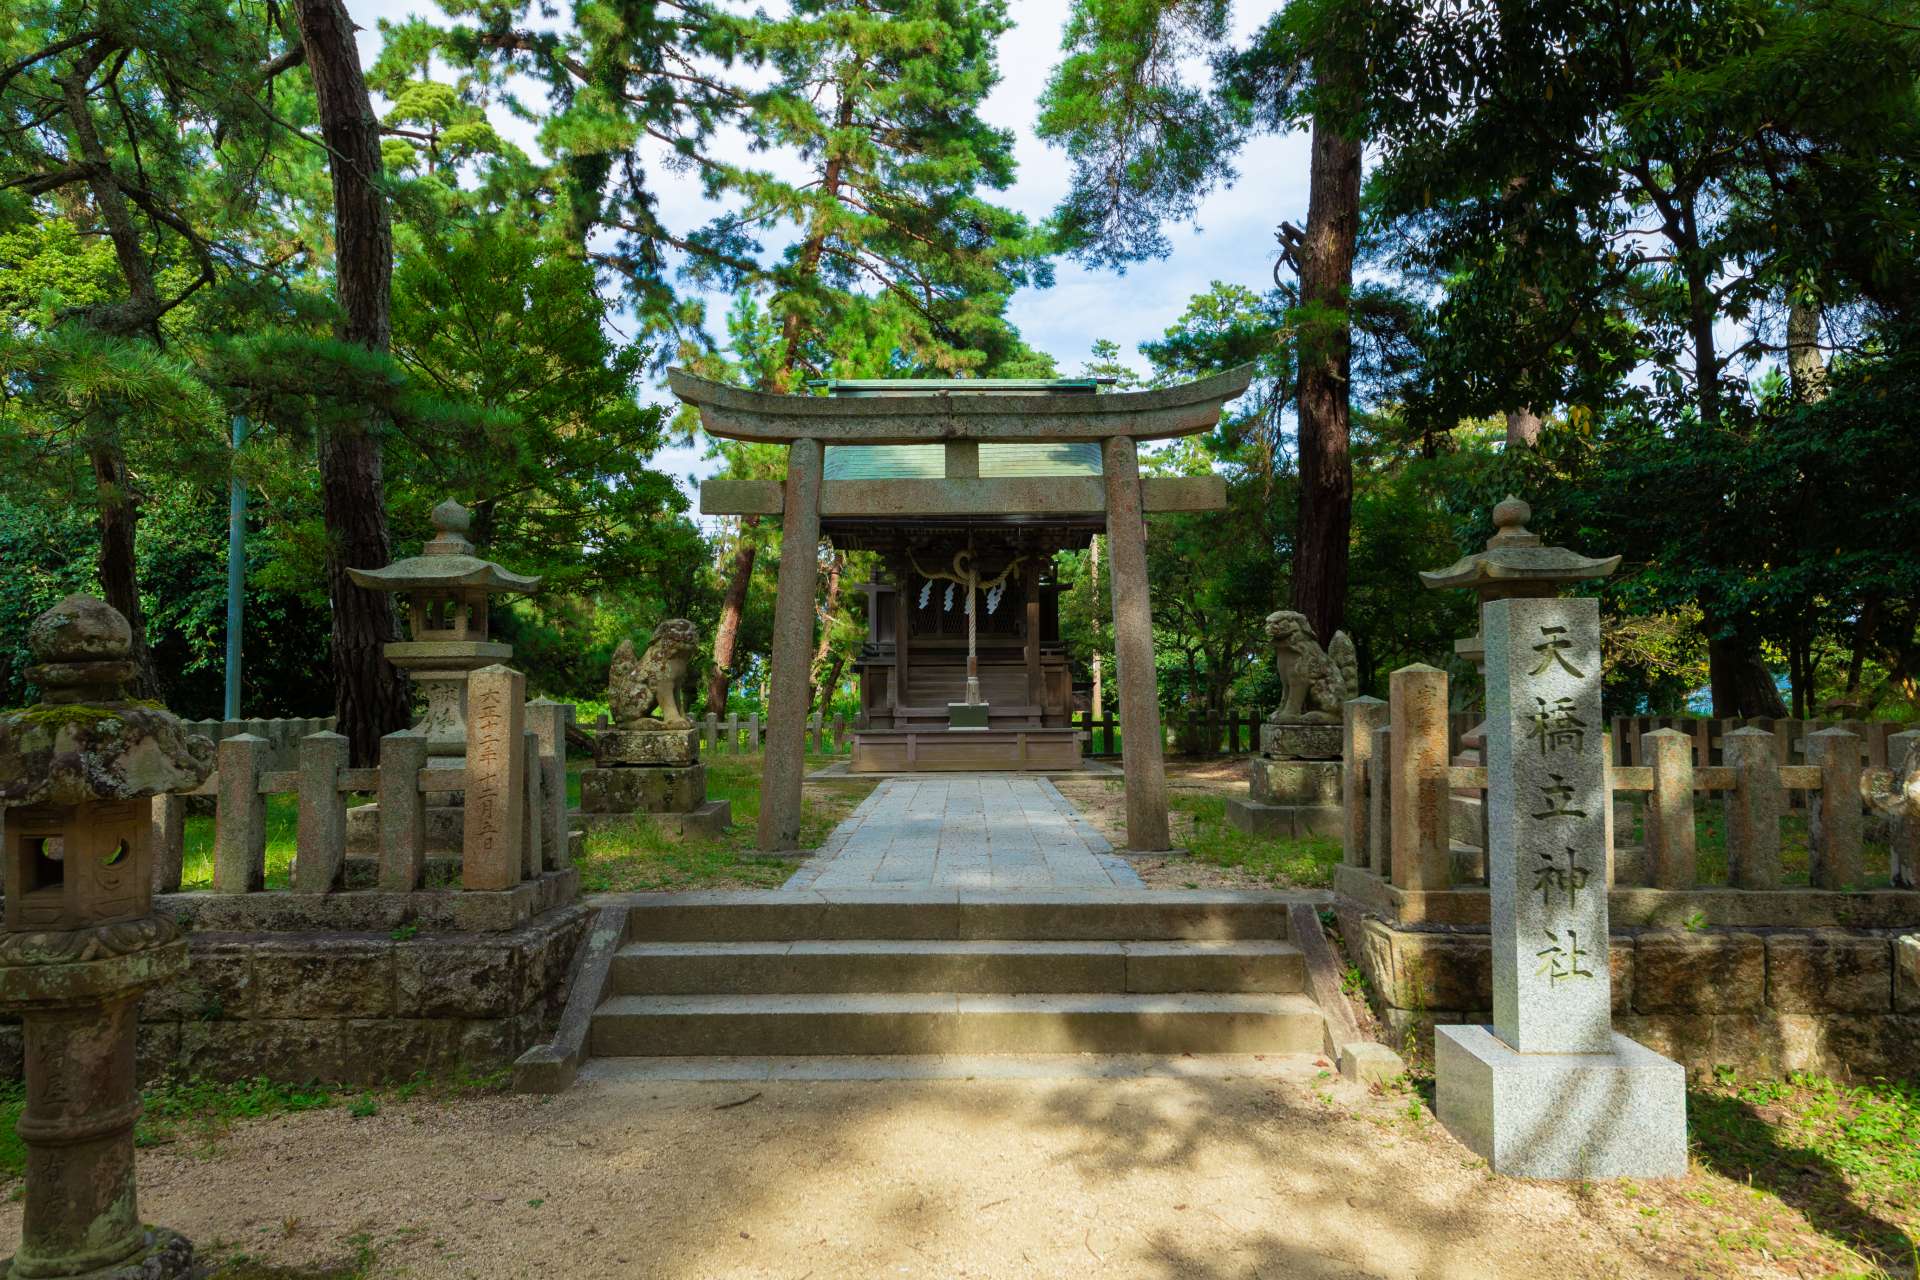 A mitad de camino, se encuentra el Santuario Amanohashidate, un lugar popular para pedir deseos románticos.